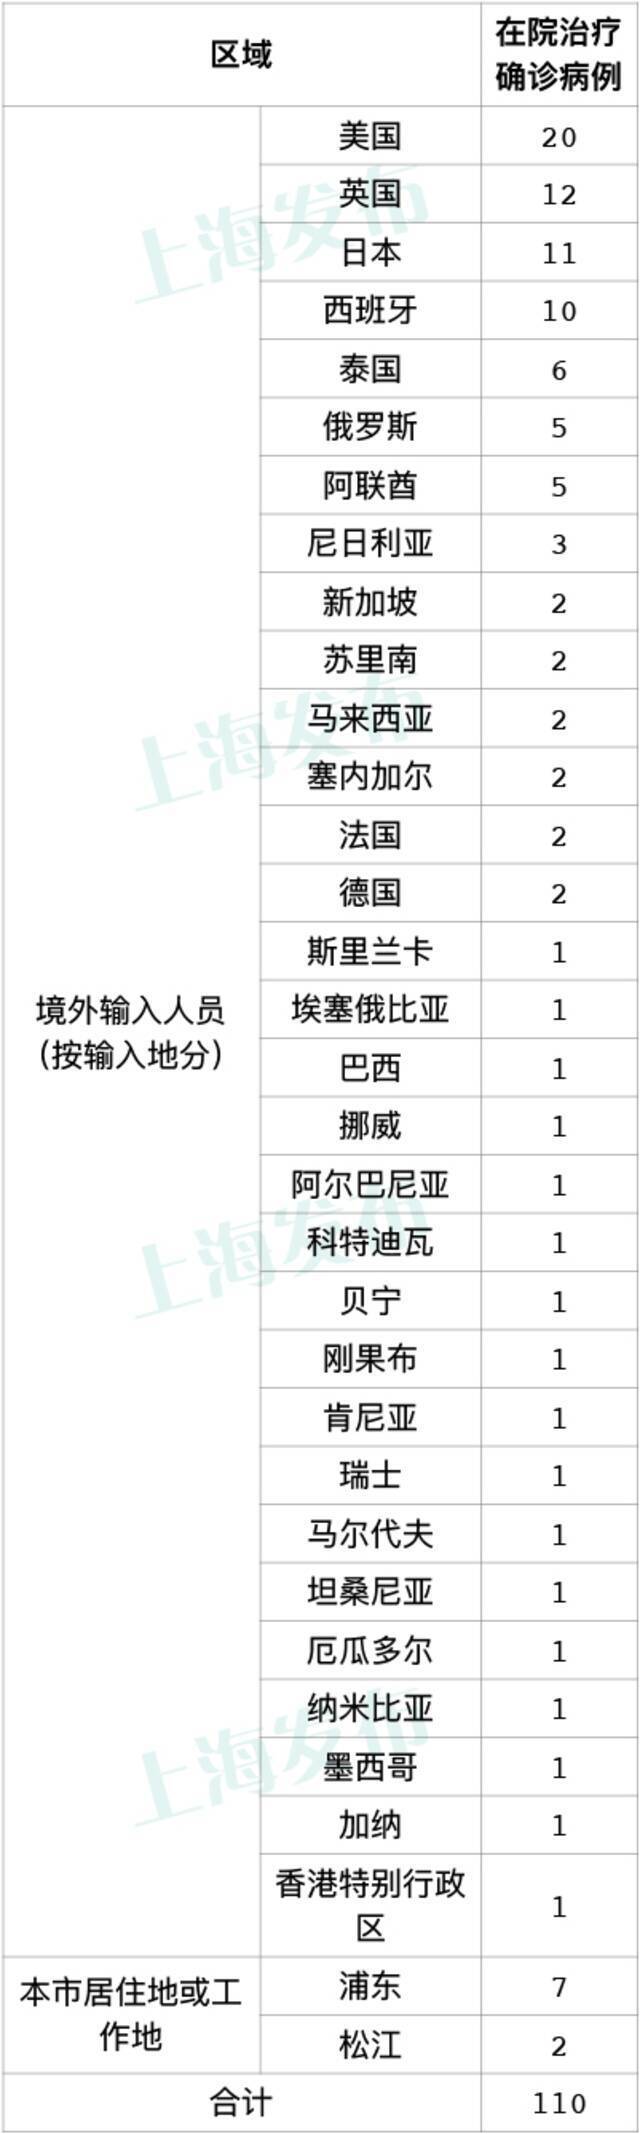 上海昨日无新增本土新冠肺炎病例 新增3例境外输入病例